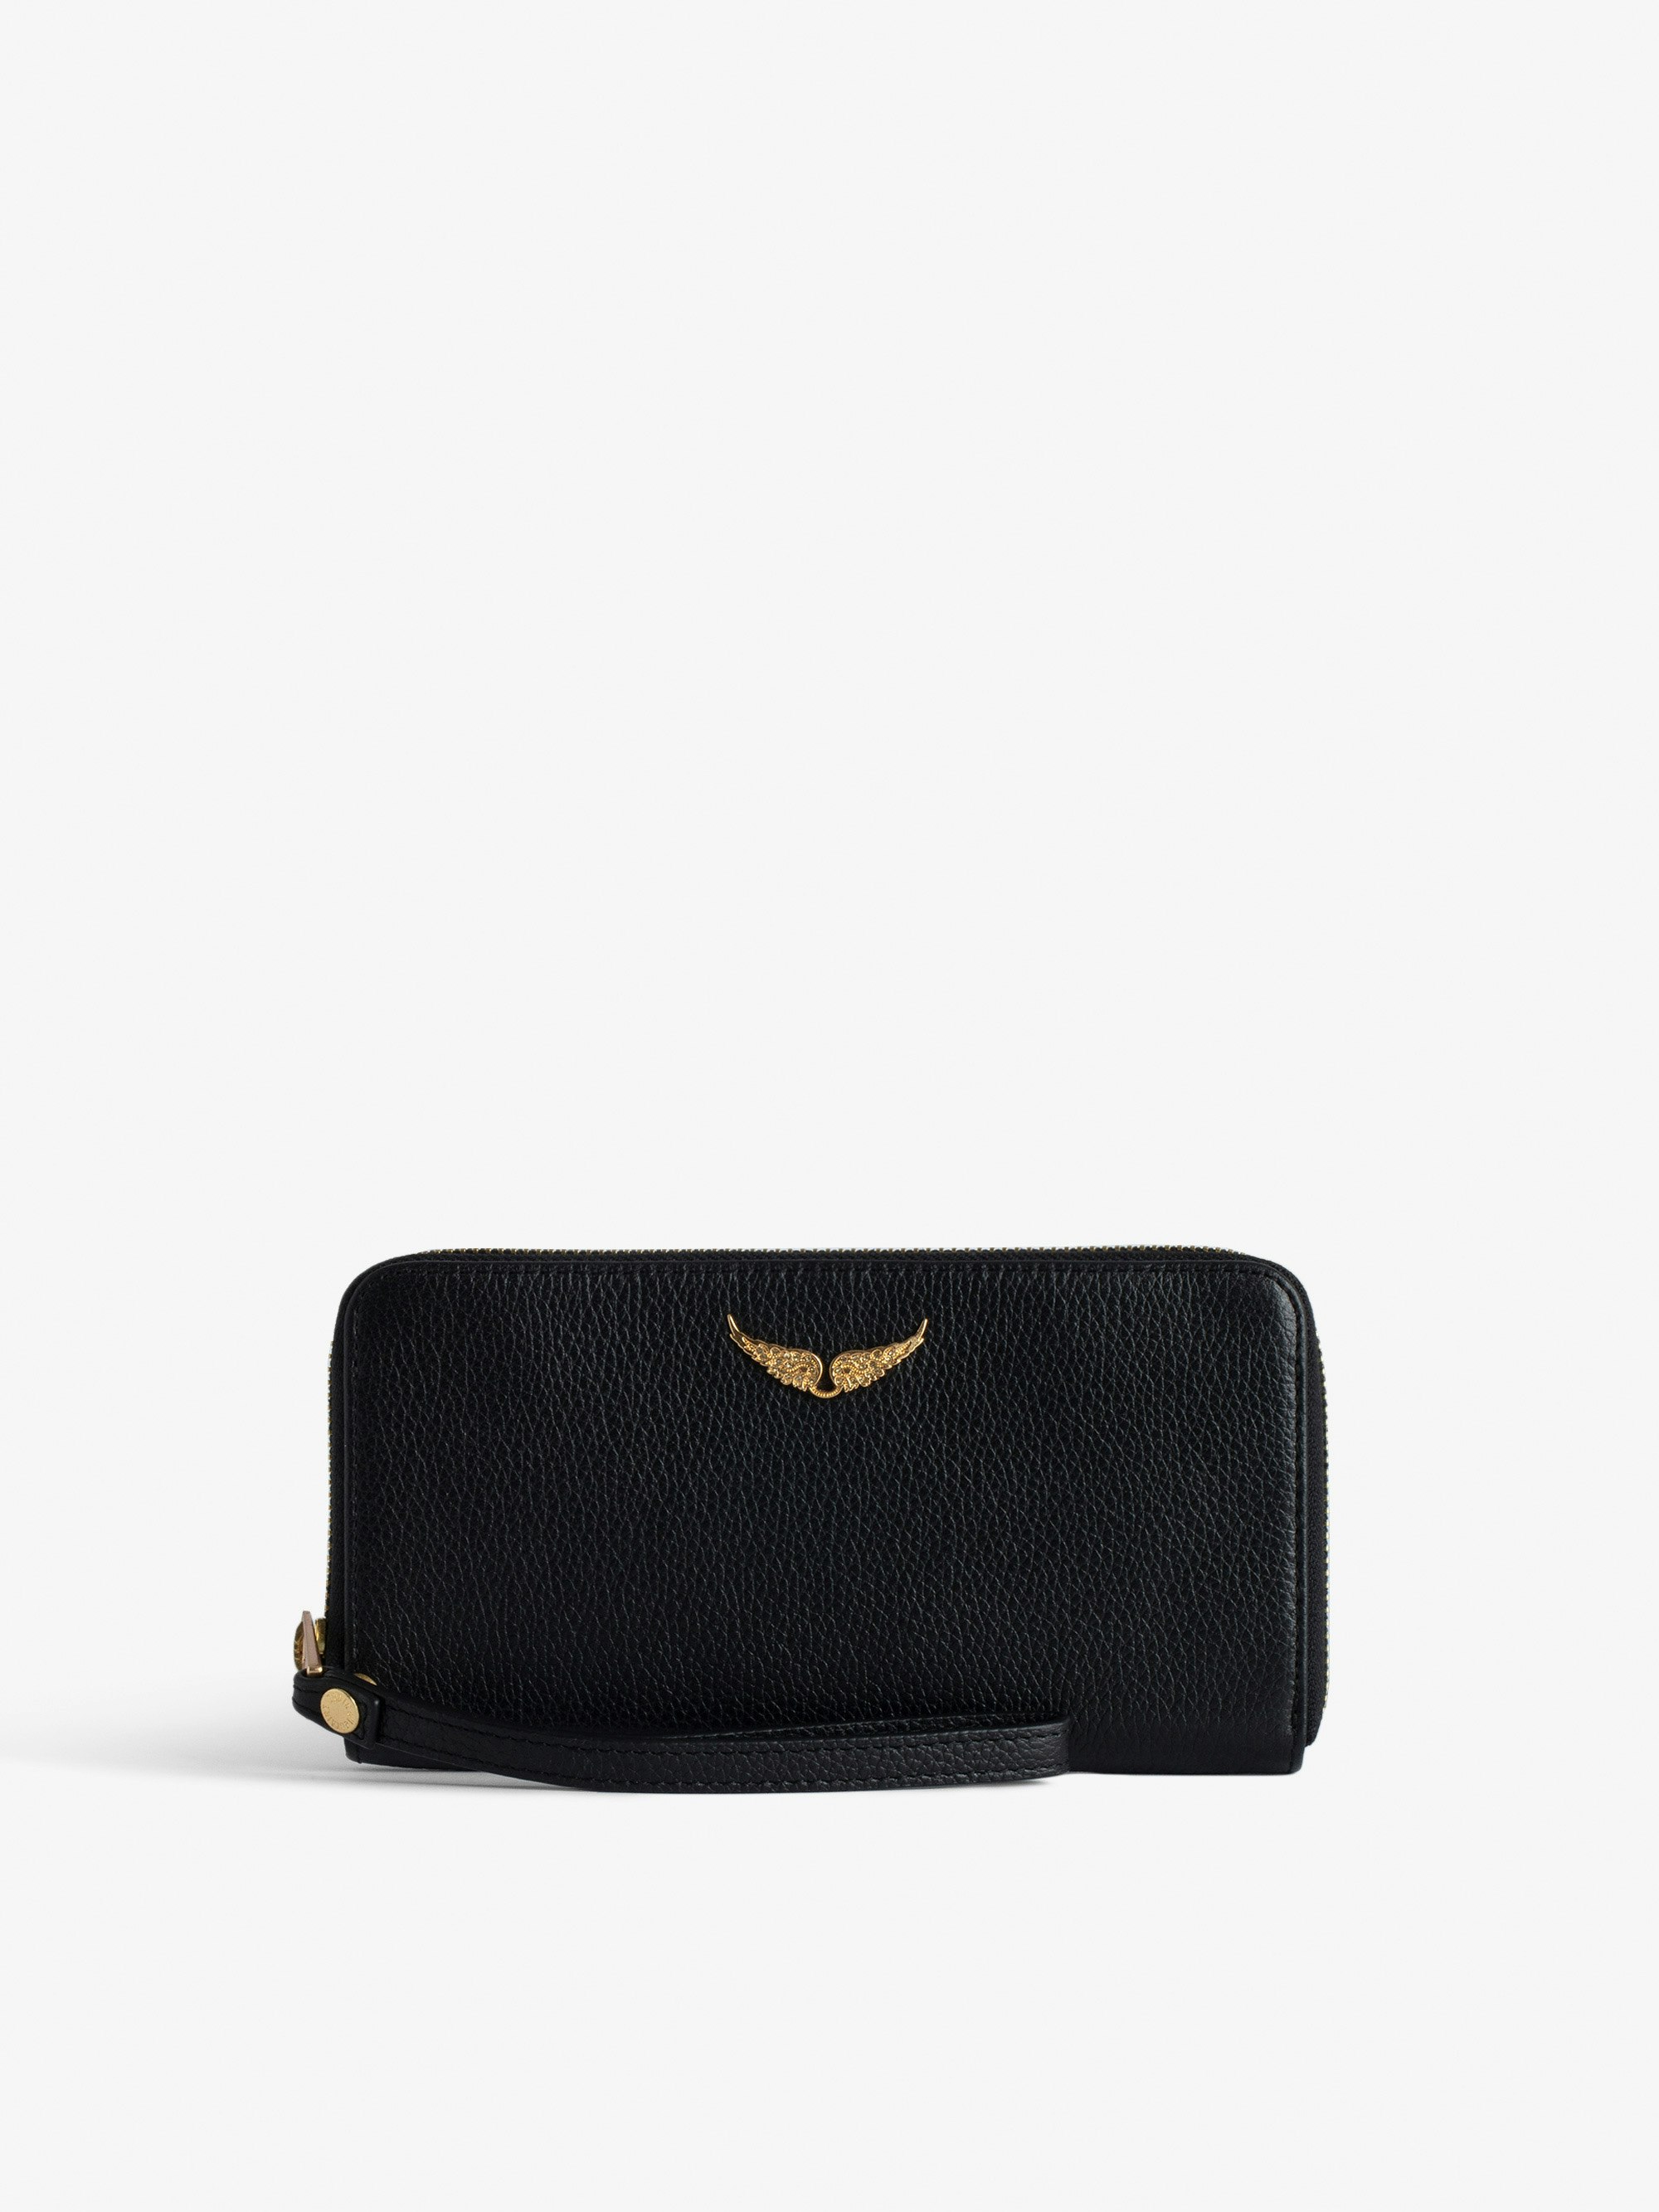 Brieftasche Compagnon - Schwarze Brieftasche aus genarbtem Leder mit einem Flügel-Charm für Damen.